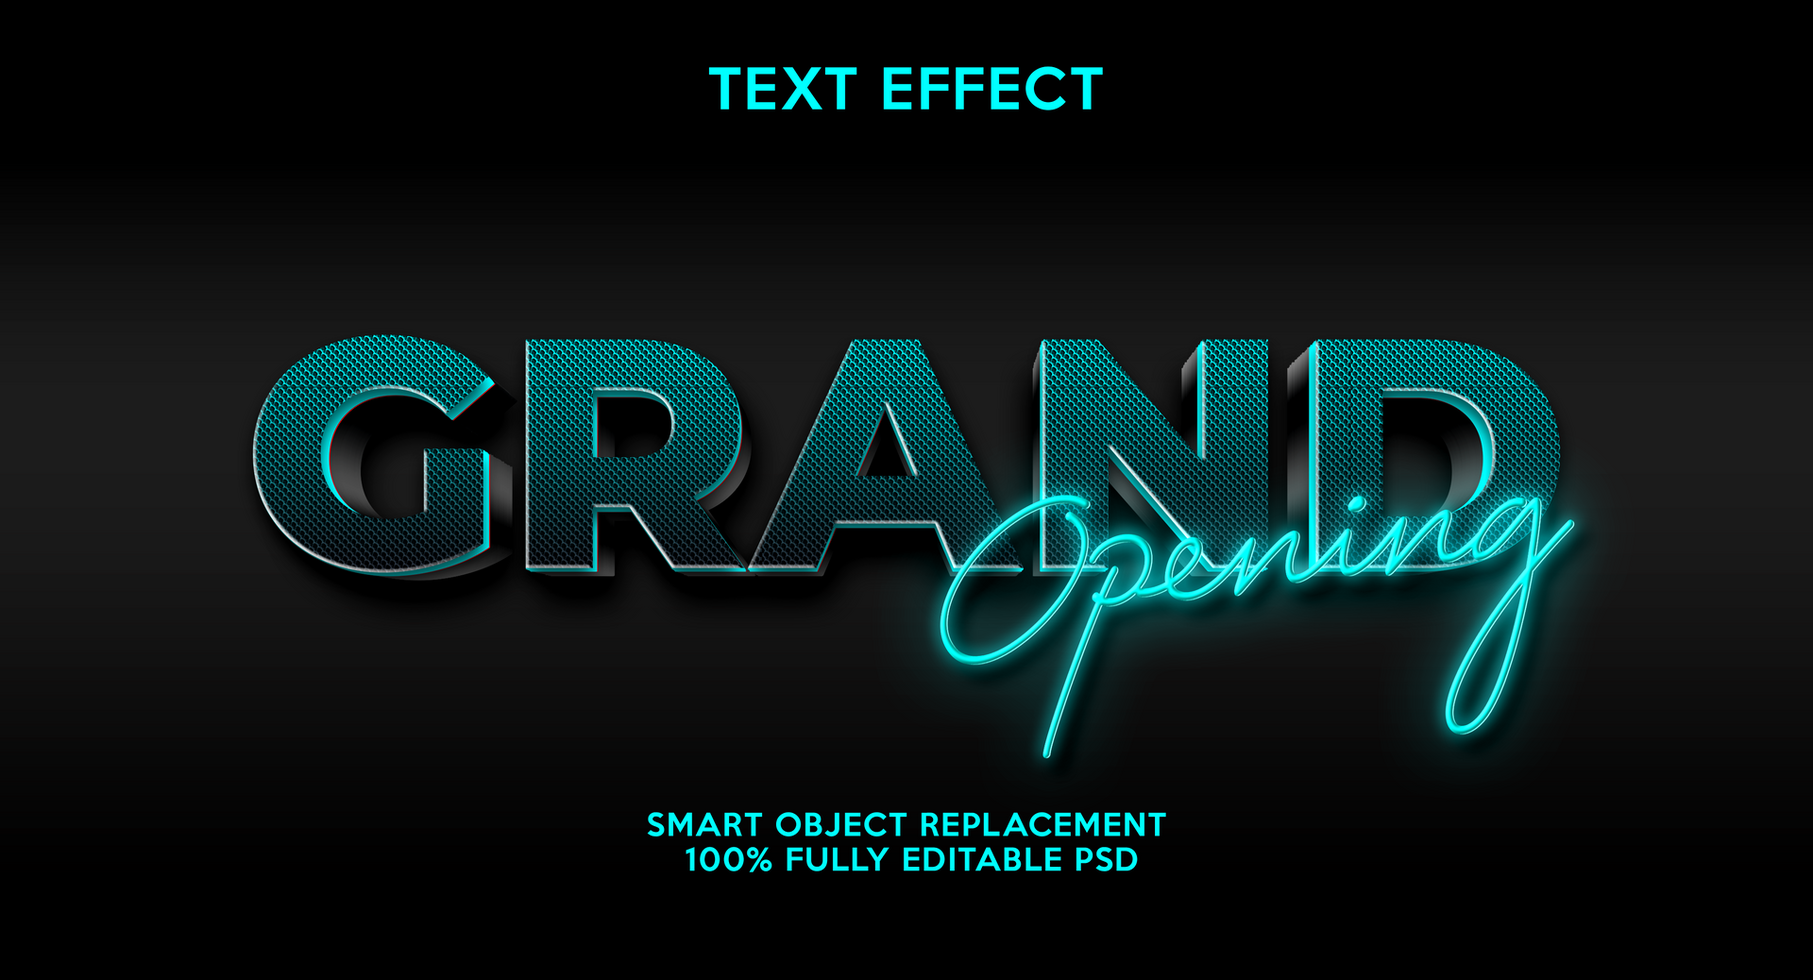 3D text effects template psd